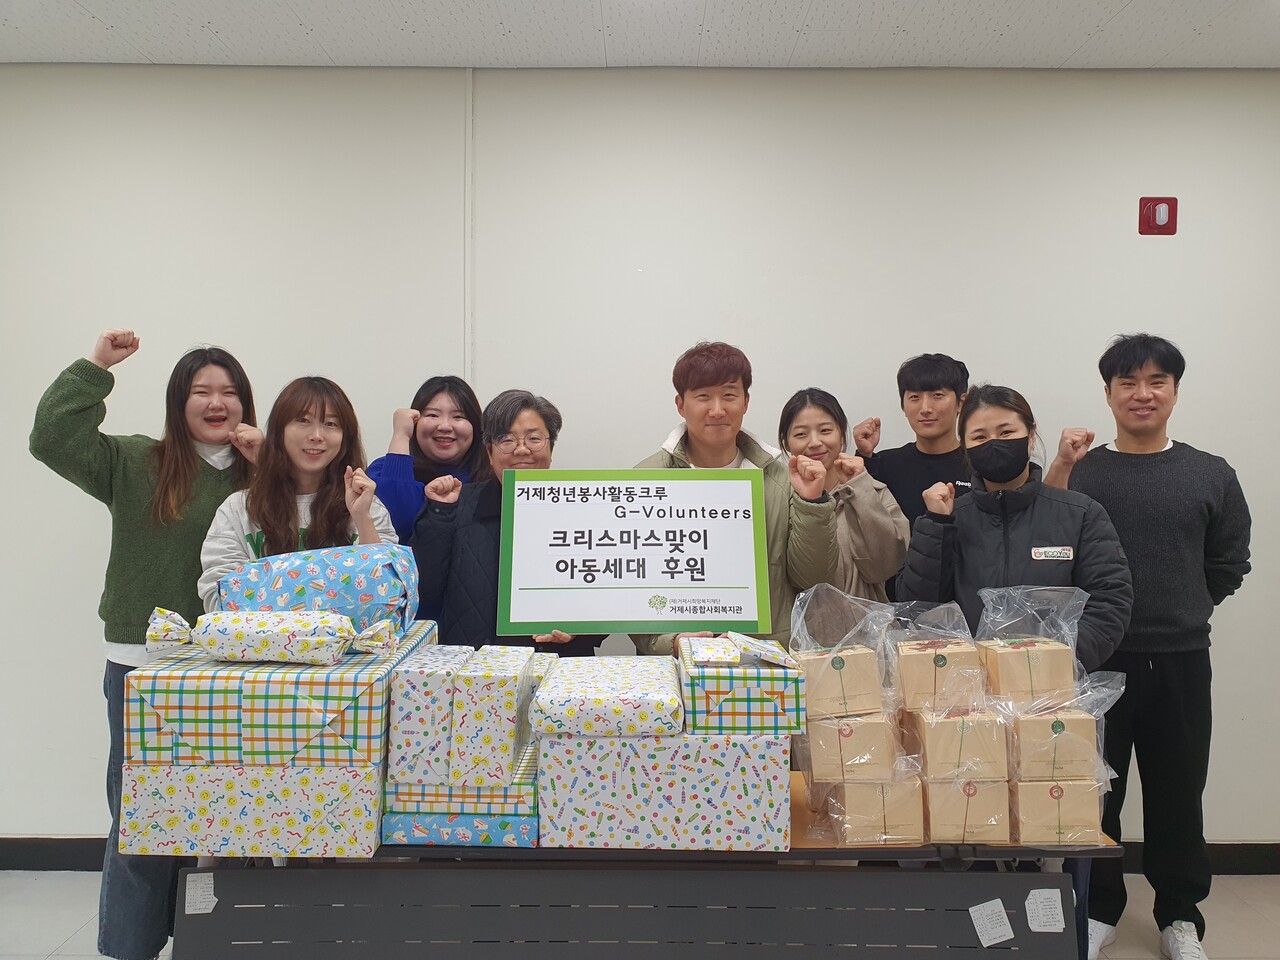 거제청년봉사활동크루 G-Volunteers(대표 김민준)가 크리스마스를 맞아 거제시종합사회복지관을 통해 저소득 아동 세대에게 크리스마스 선물을 전달했다.